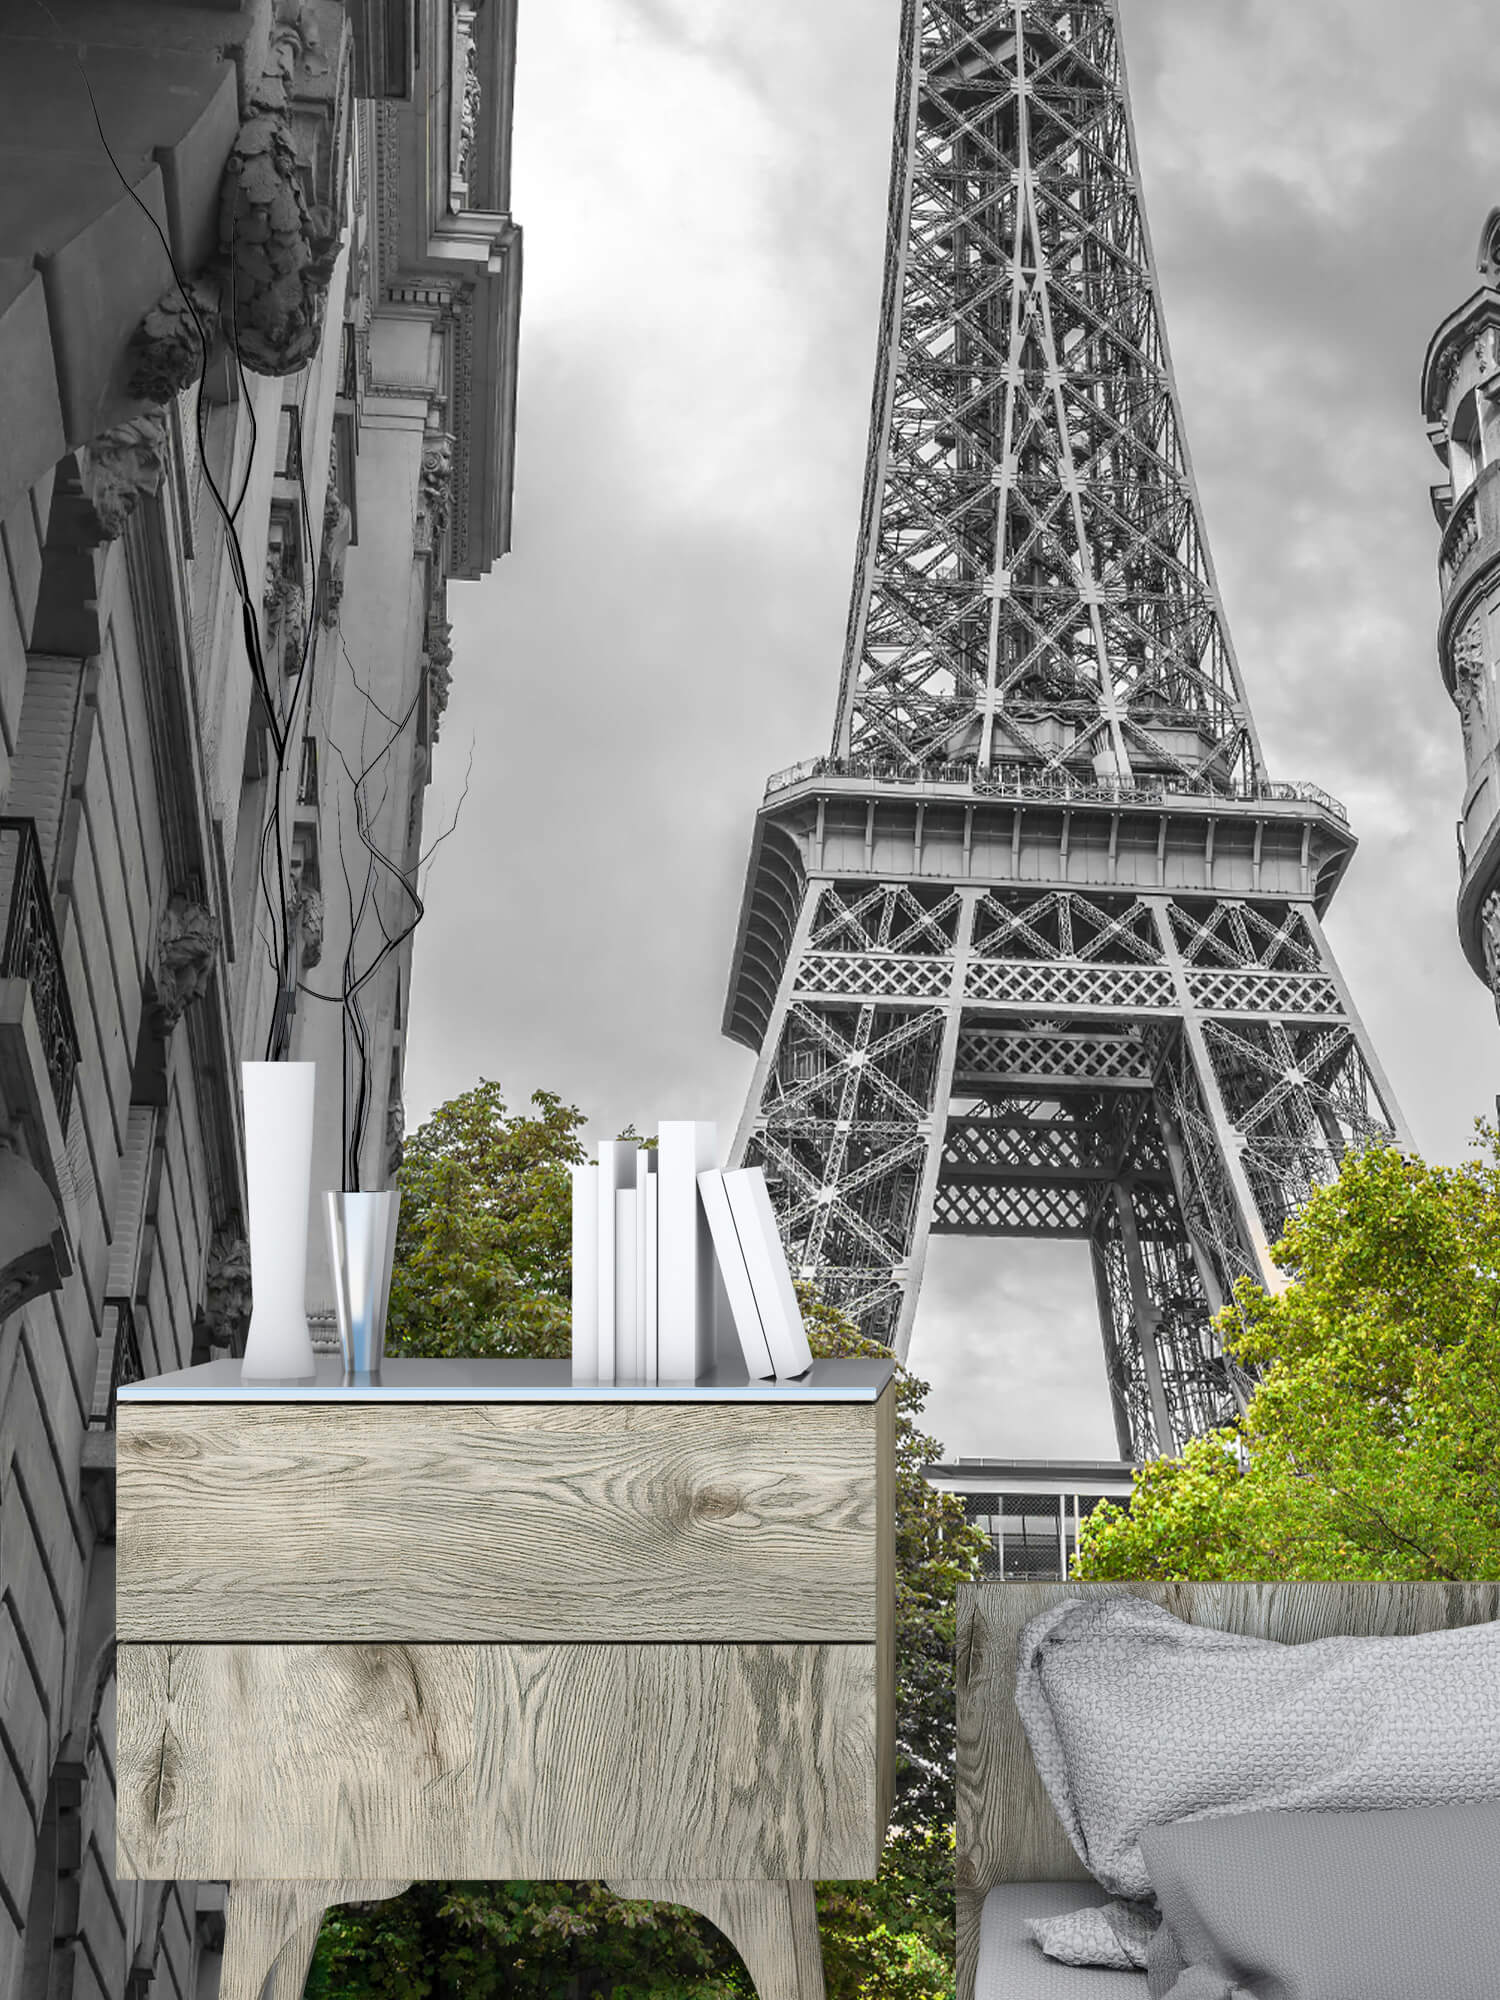  Papel pintado con Torre Eiffel en blanco y negro - Pasillo 10